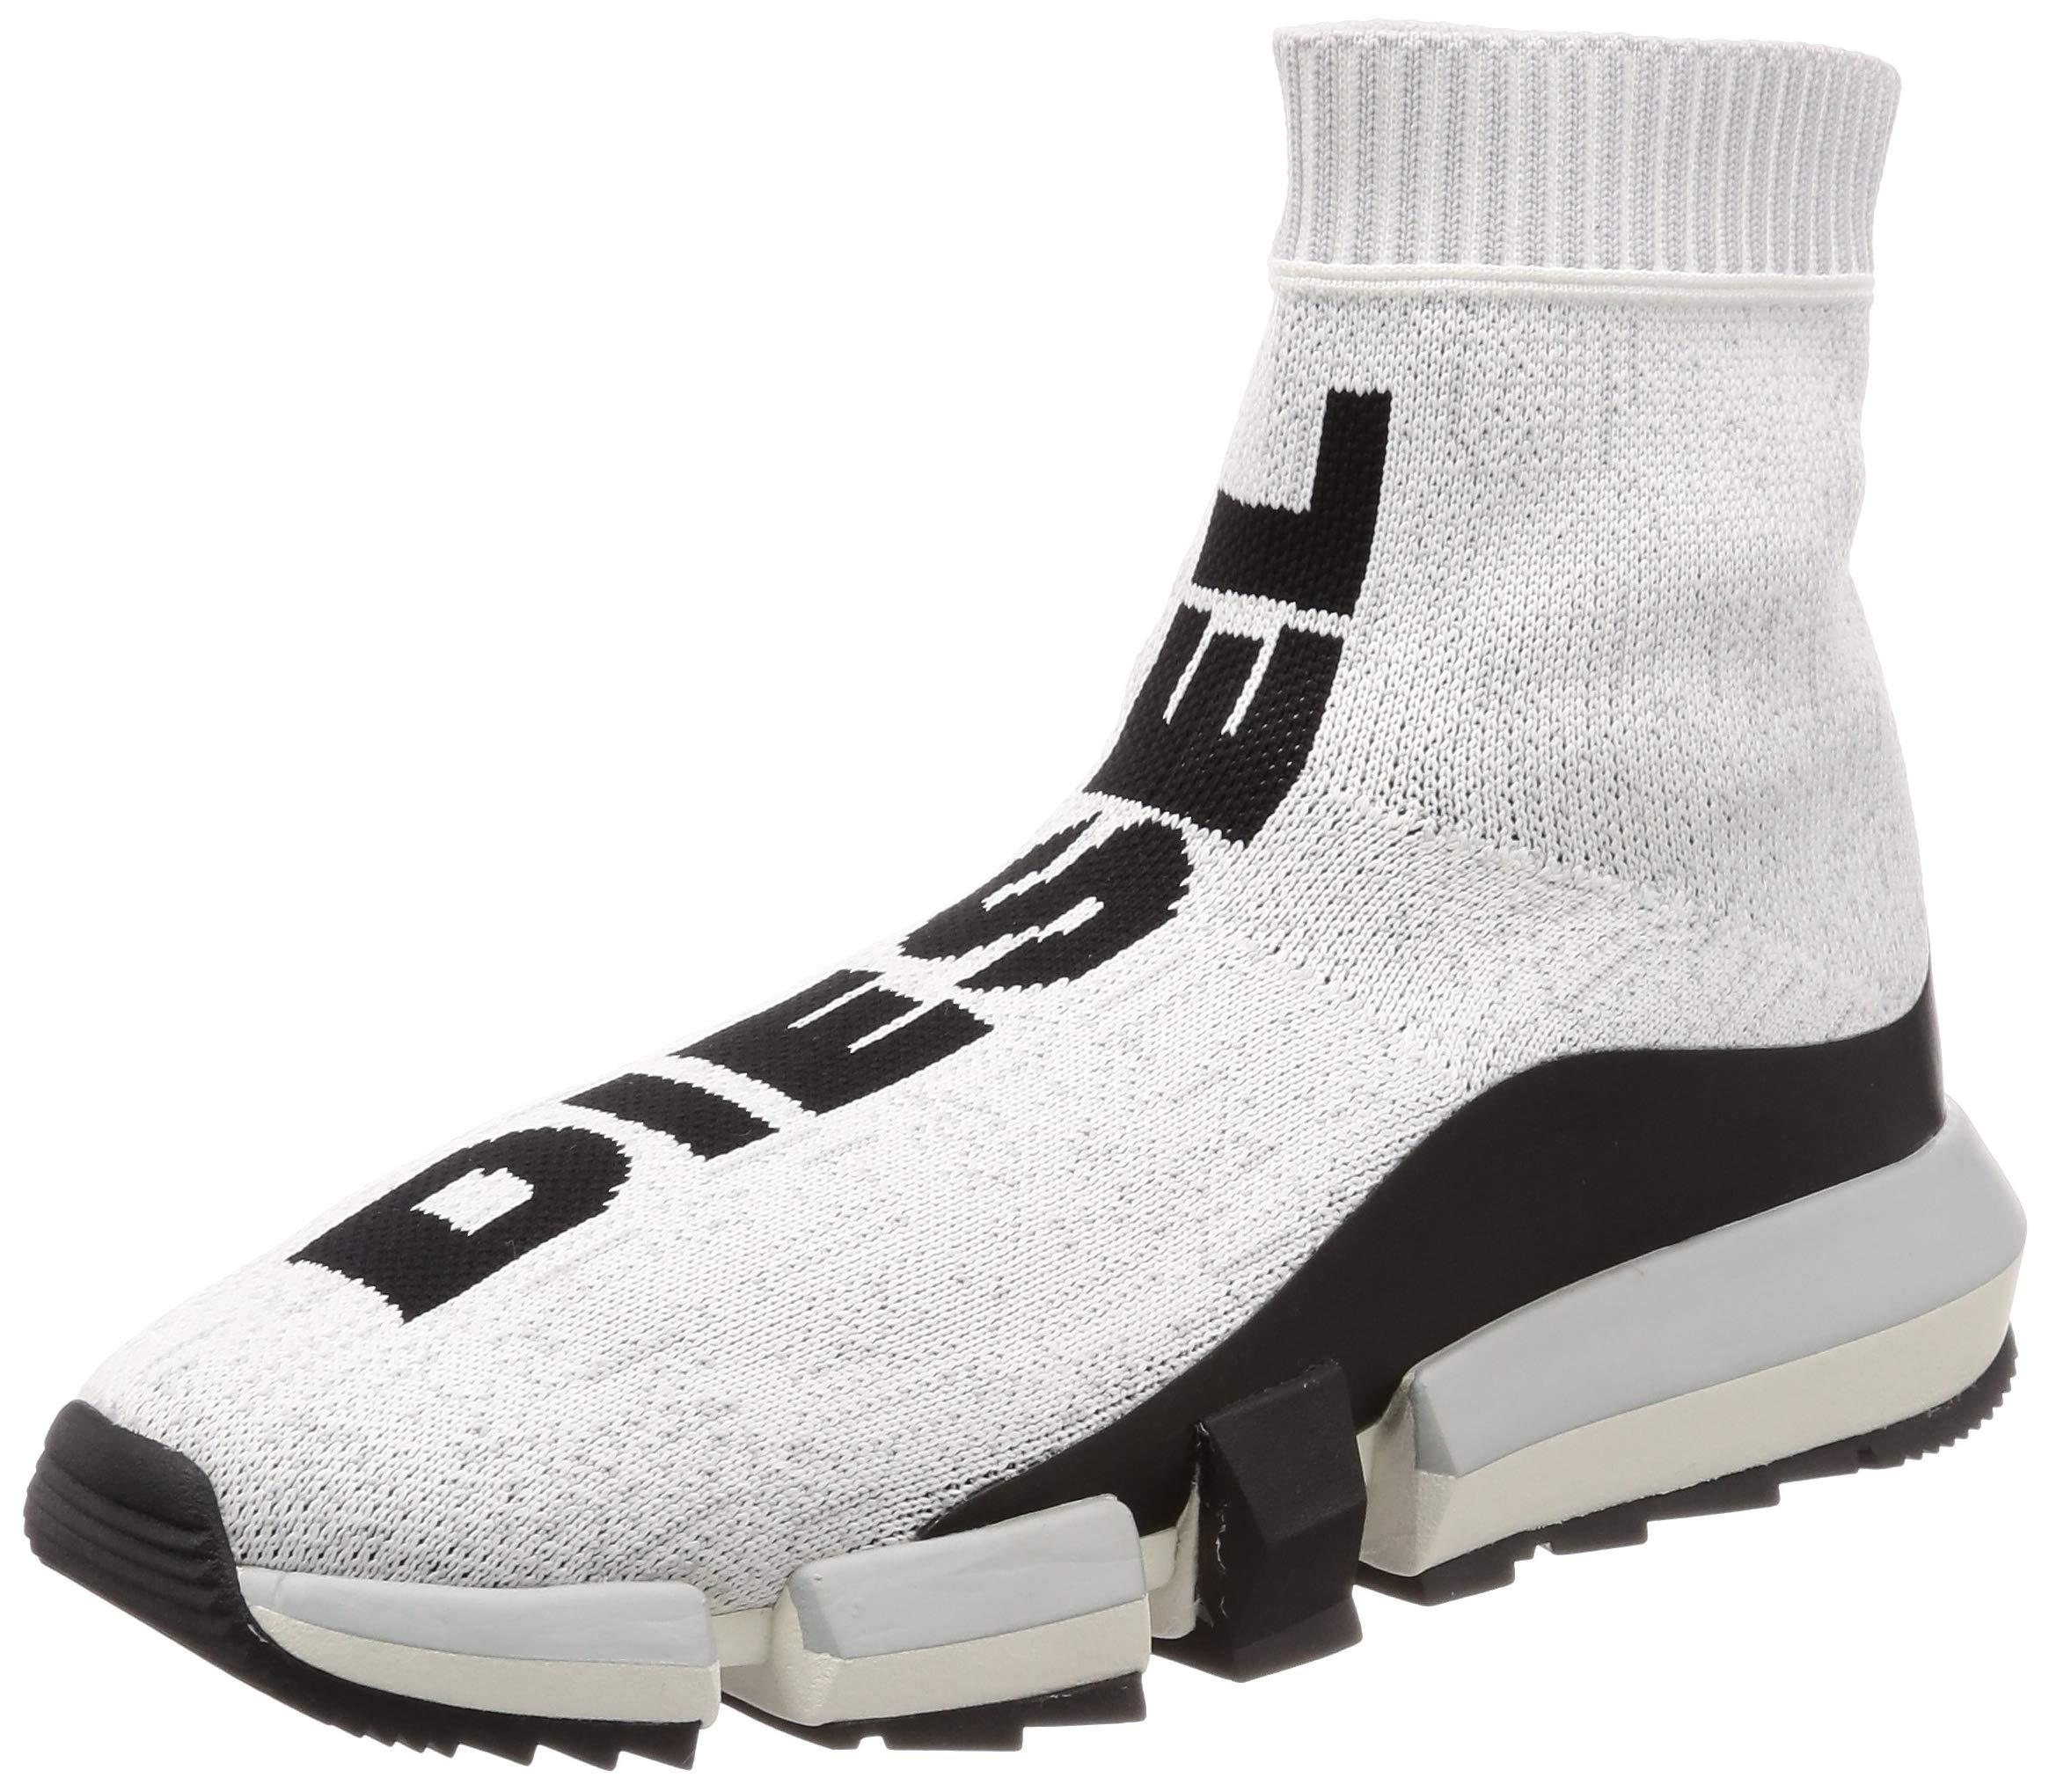 DIESEL H-padola Sock-sneaker Mid for Men - Lyst